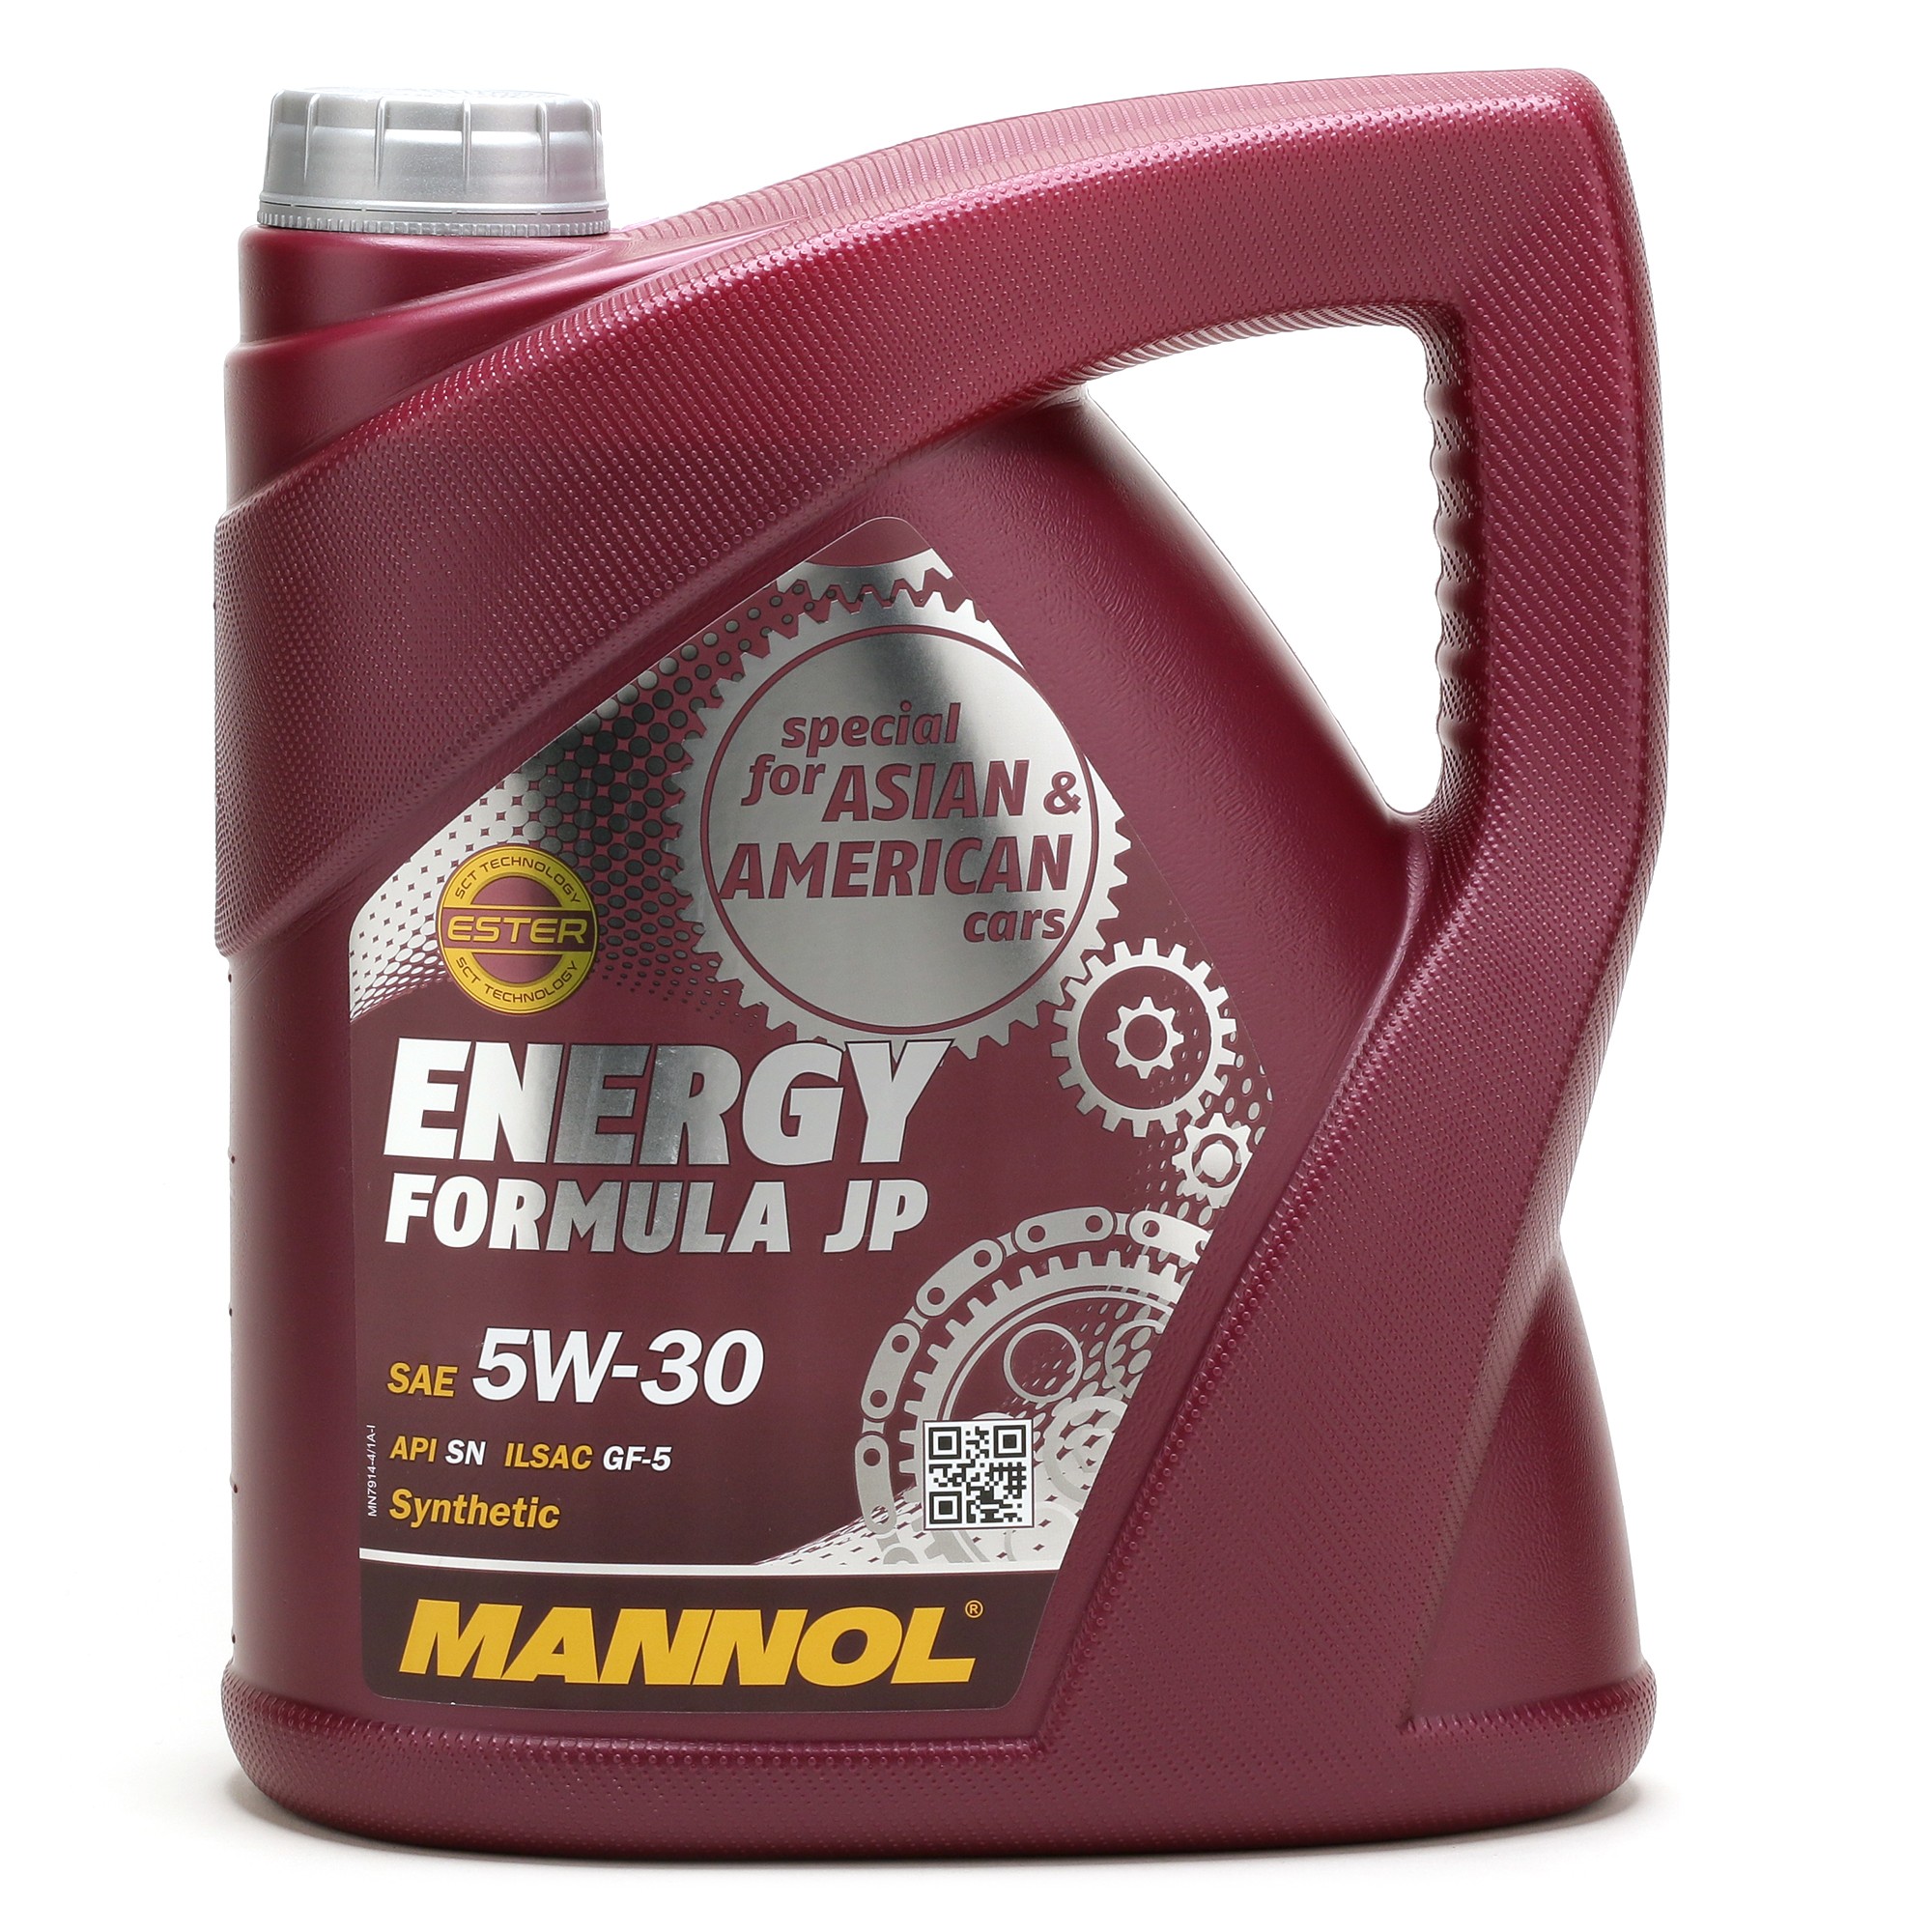 5W-30 Mannol 7914 Energy Formula JP Motoröl 4 Liter